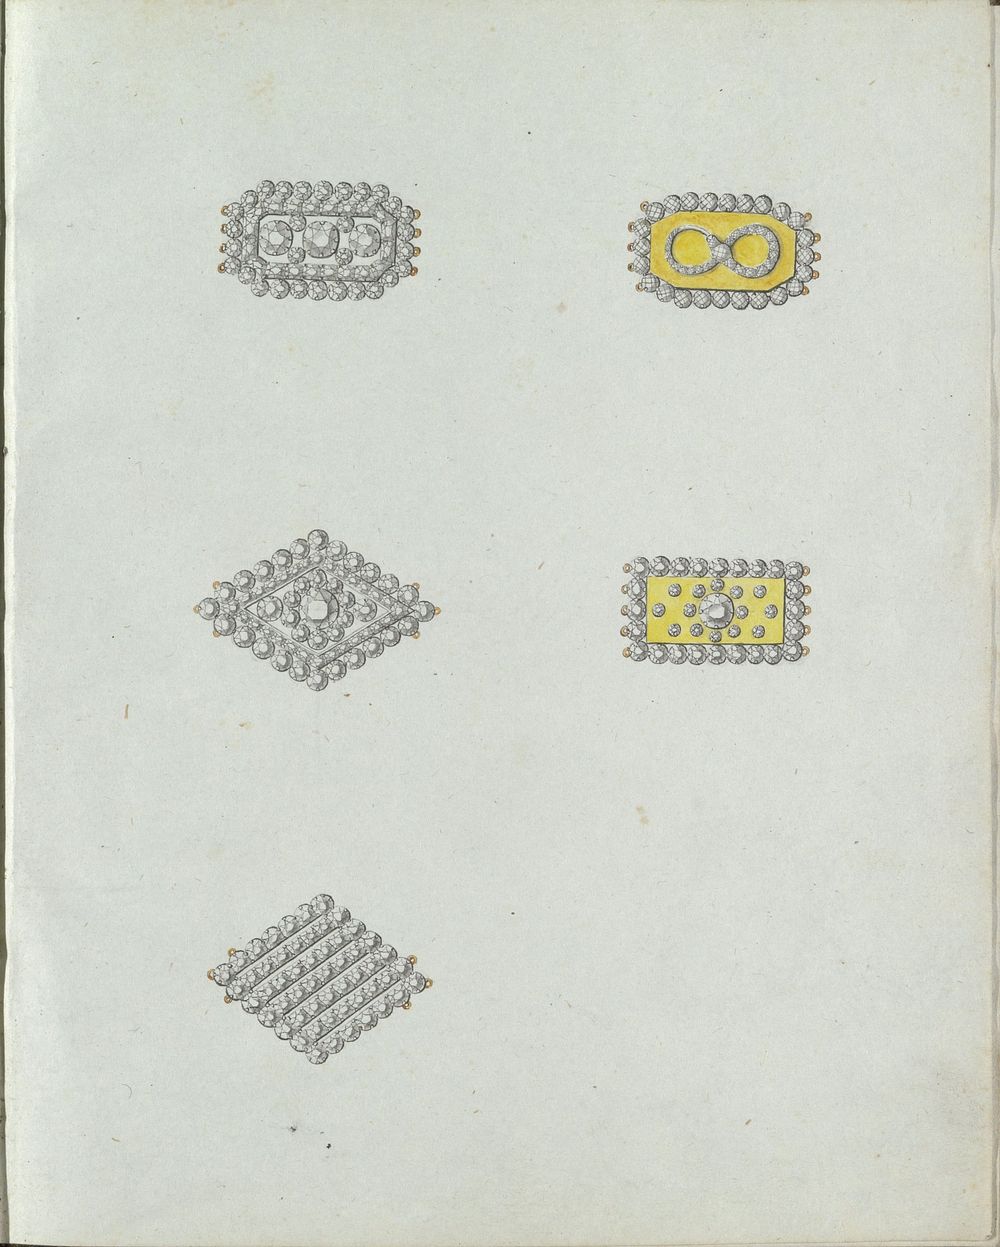 Vijf juwelen, waaronder twee ruitvormige (c. 1800 - c. 1810) by Carl Friedrich Bärthel